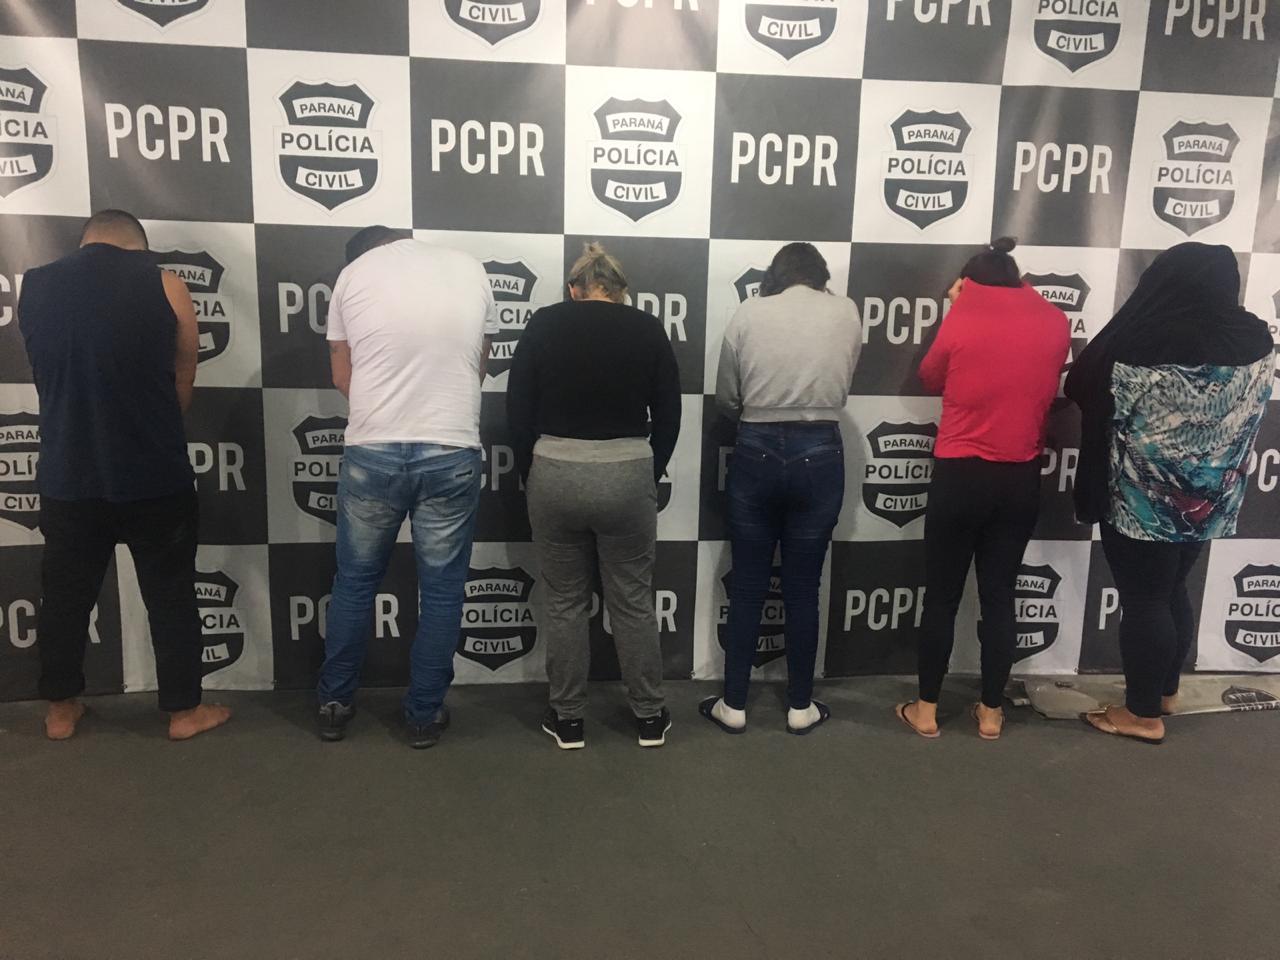  Grupo é preso suspeito de cárcere privado em Curitiba